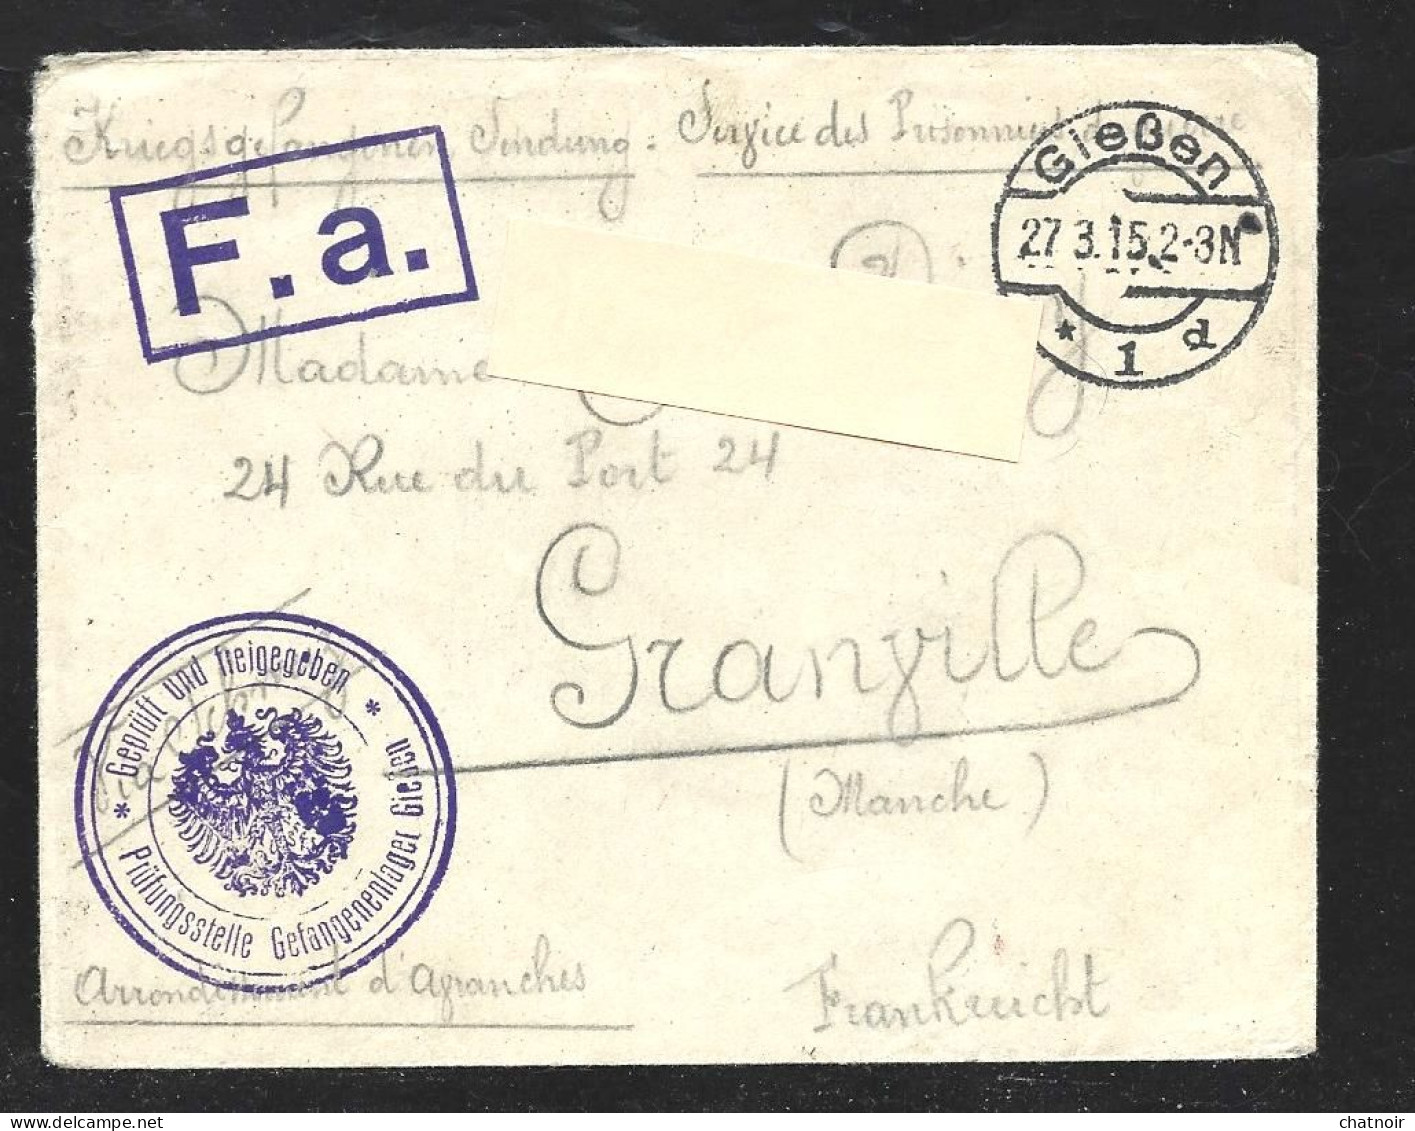 ALLEMAGNE  /GIEBEN 1915  Pour La Cote D 'or/ Adresse :  Camp De Siessen / Pour  Granville - 1914-18